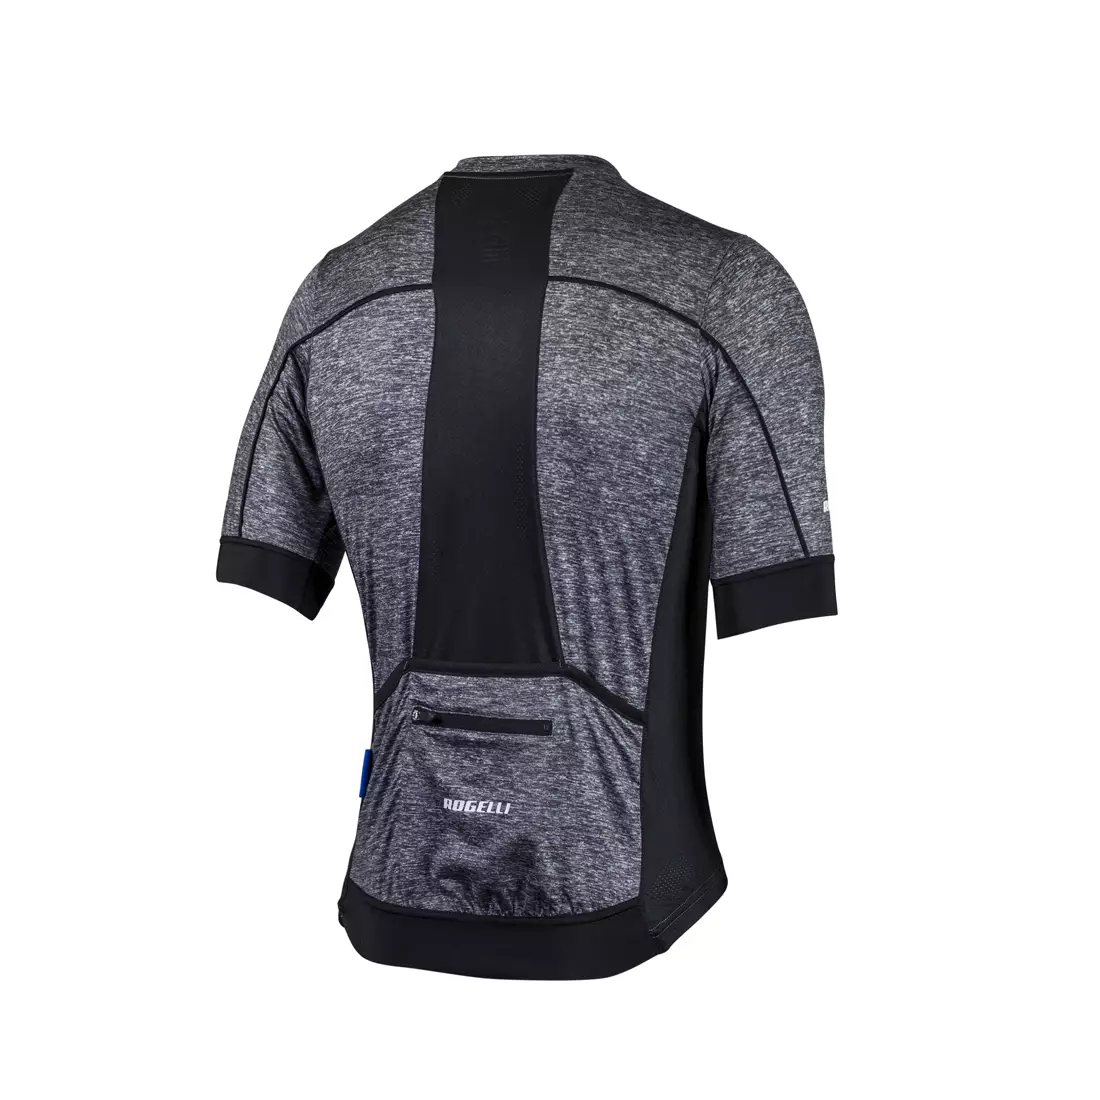 ROGELLI PASSO pánský cyklistický dres, šedý a černý